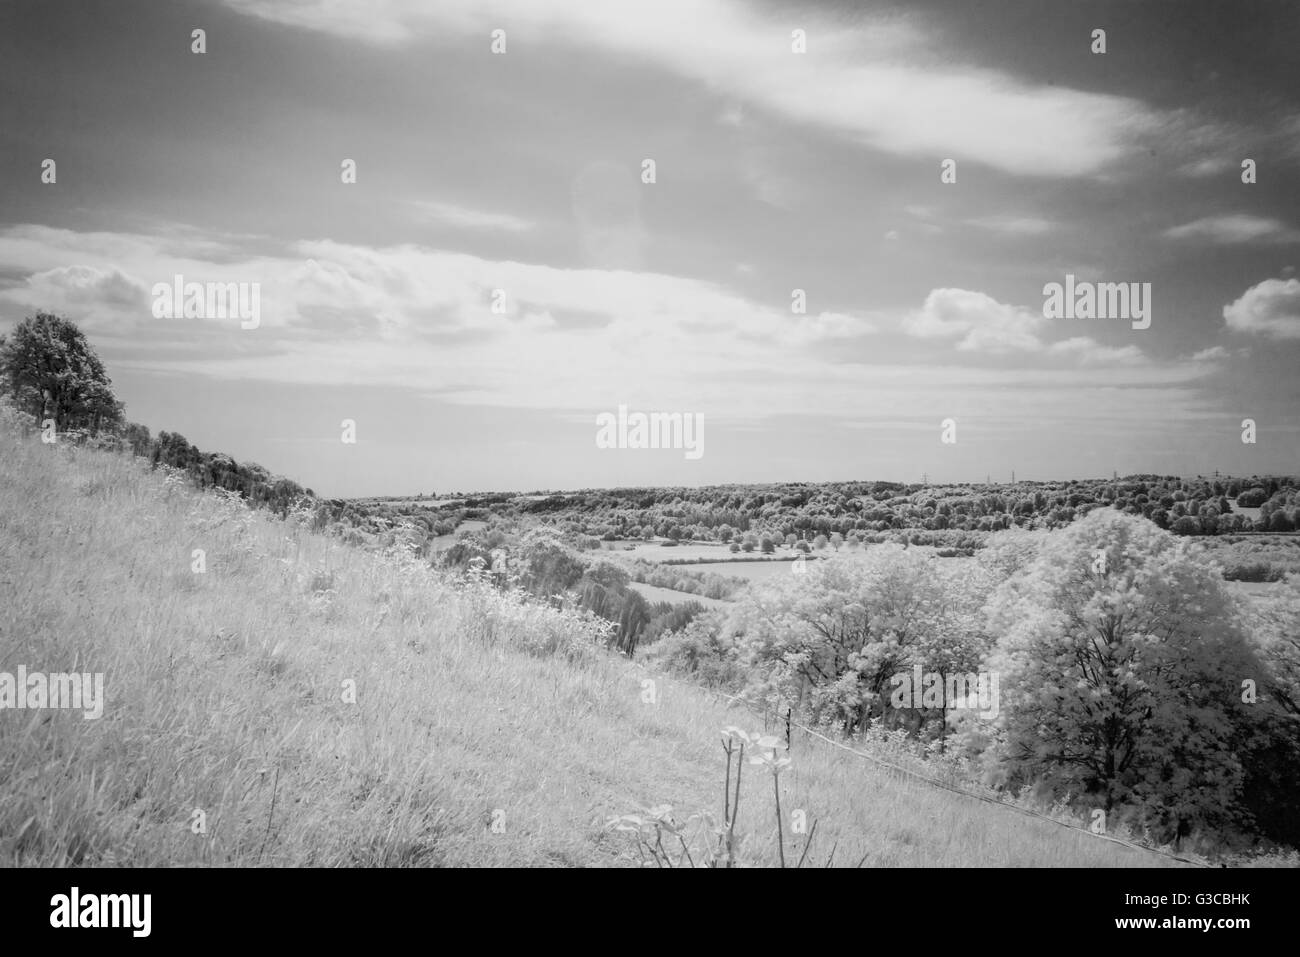 Blick auf die Themse-Tal in Hartslock, Oxfordshire, Vereinigtes Königreich. Verwenden einen Infrarot-Filter R72, um die meisten des sichtbaren Spektrums zu beseitigen. Stockfoto